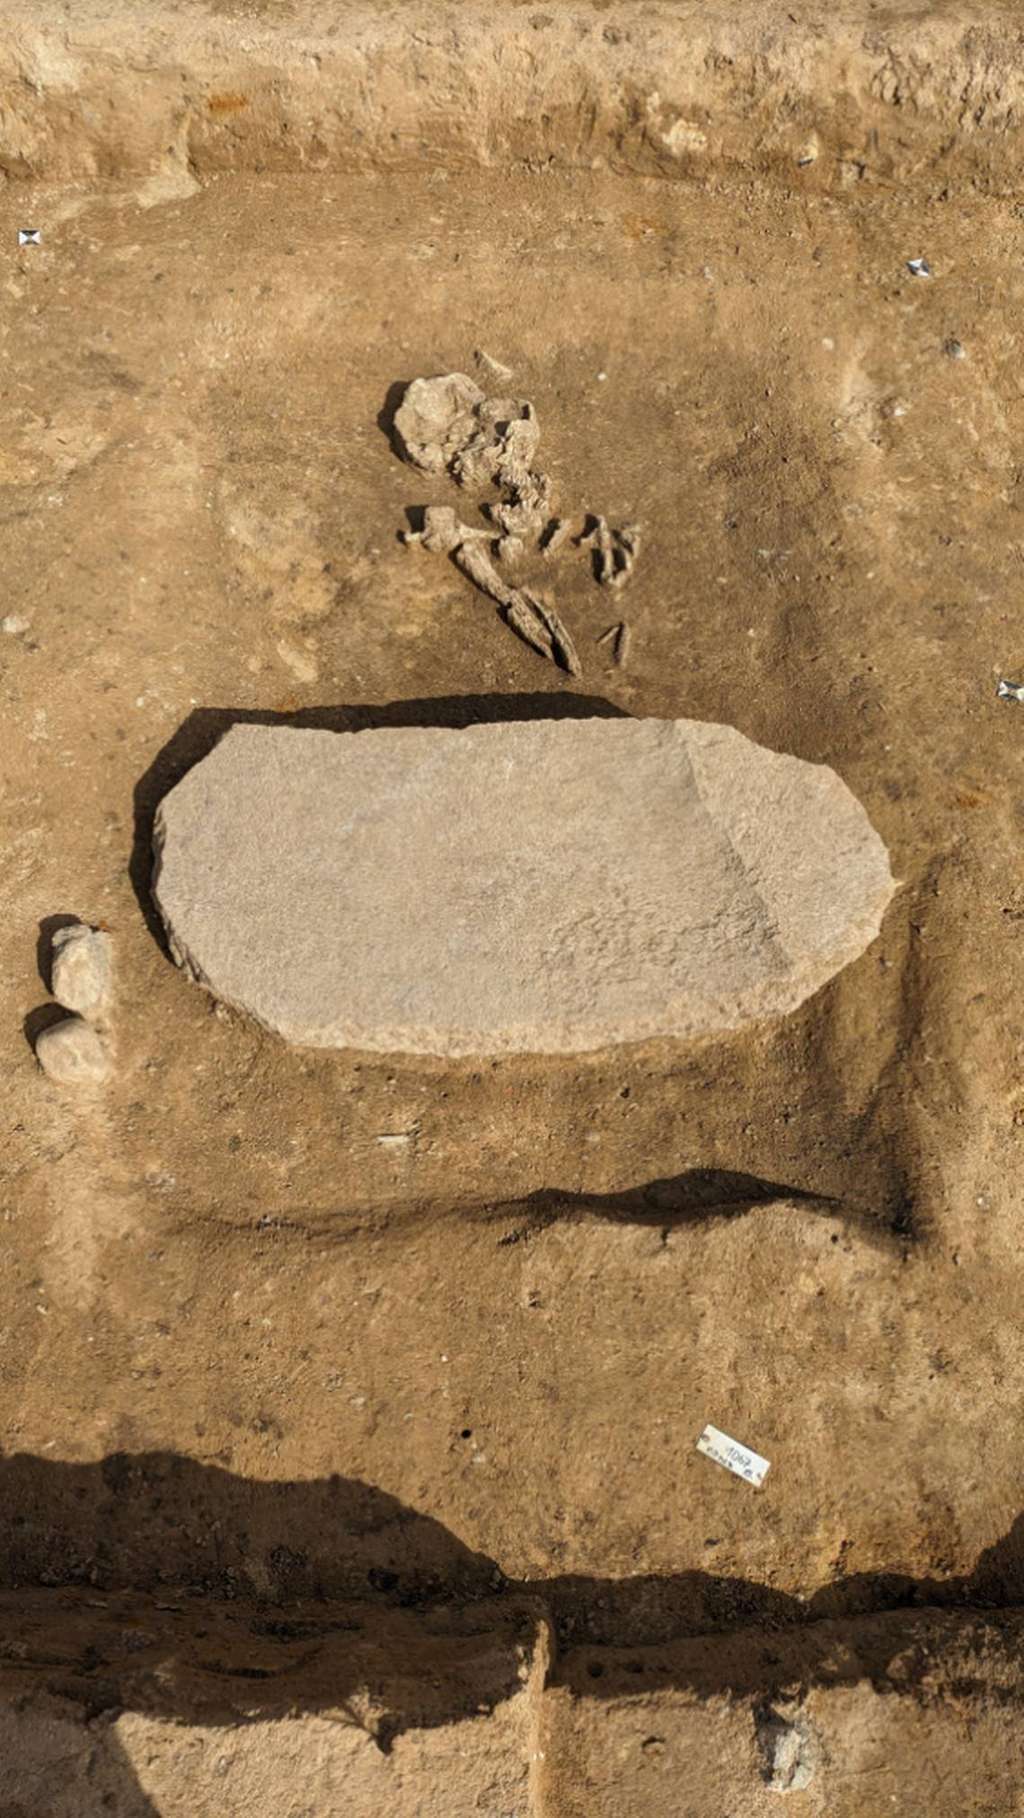 Vue aérienne de la tombe d’Oppin. On aperçoit les ossements de l’individu, vieux de plus de 4 000 ans, et la pierre superposée au corps. © LDA Saxony-Anhalt, Anja Lochner-Rechta